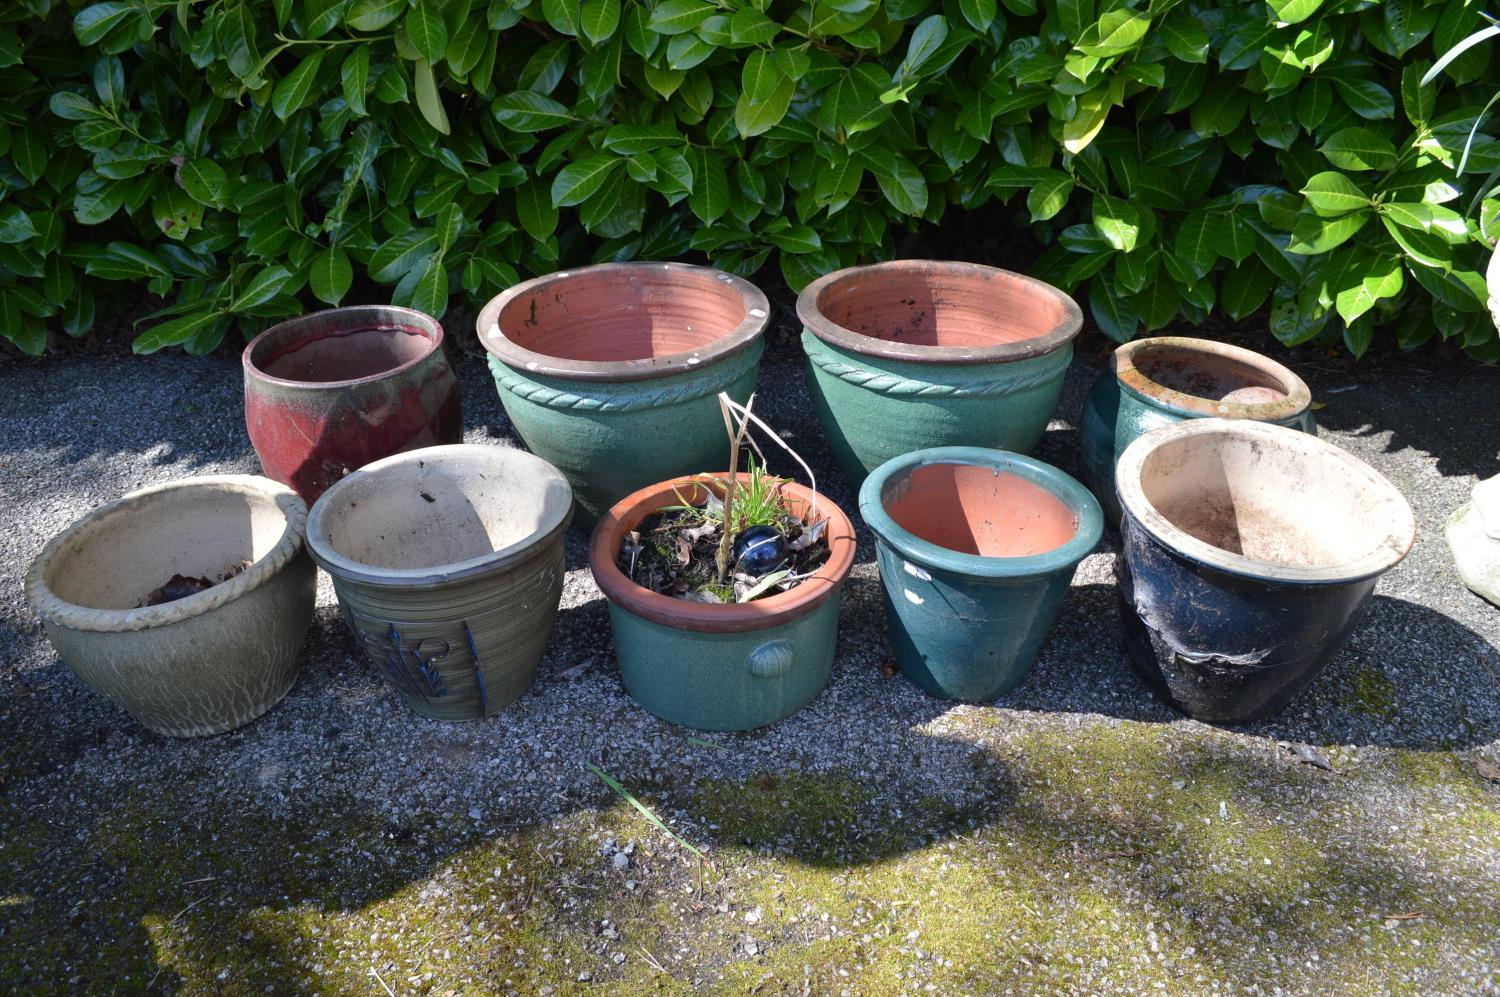 Group of nine various glazed plant pots - largest 37cm dia x 31cm tall Please note descriptions